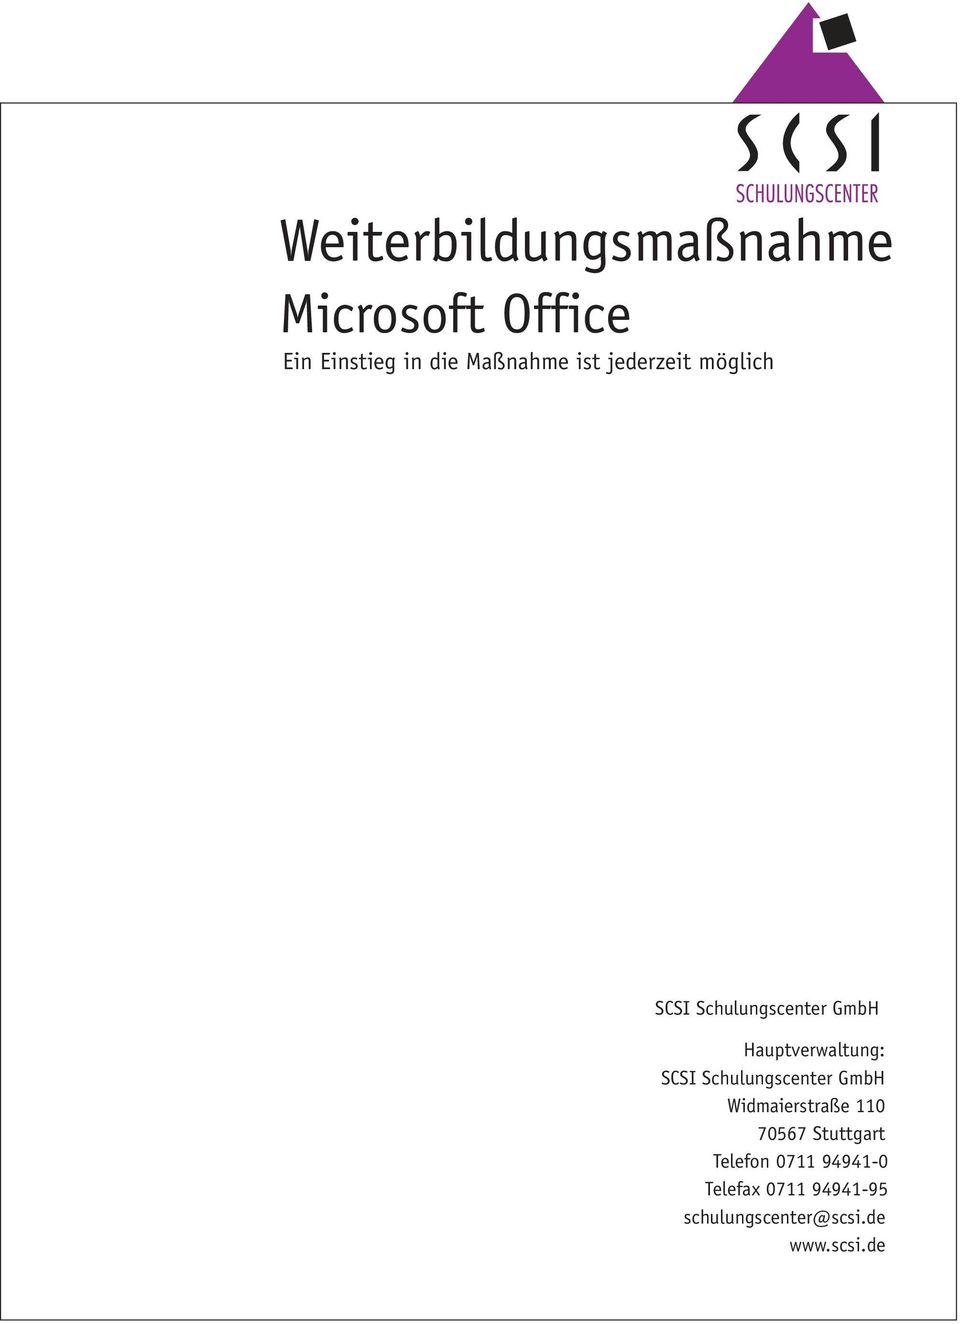 Hauptverwaltung: SCSI Schulungscenter GmbH Widmaierstraße 110 70567